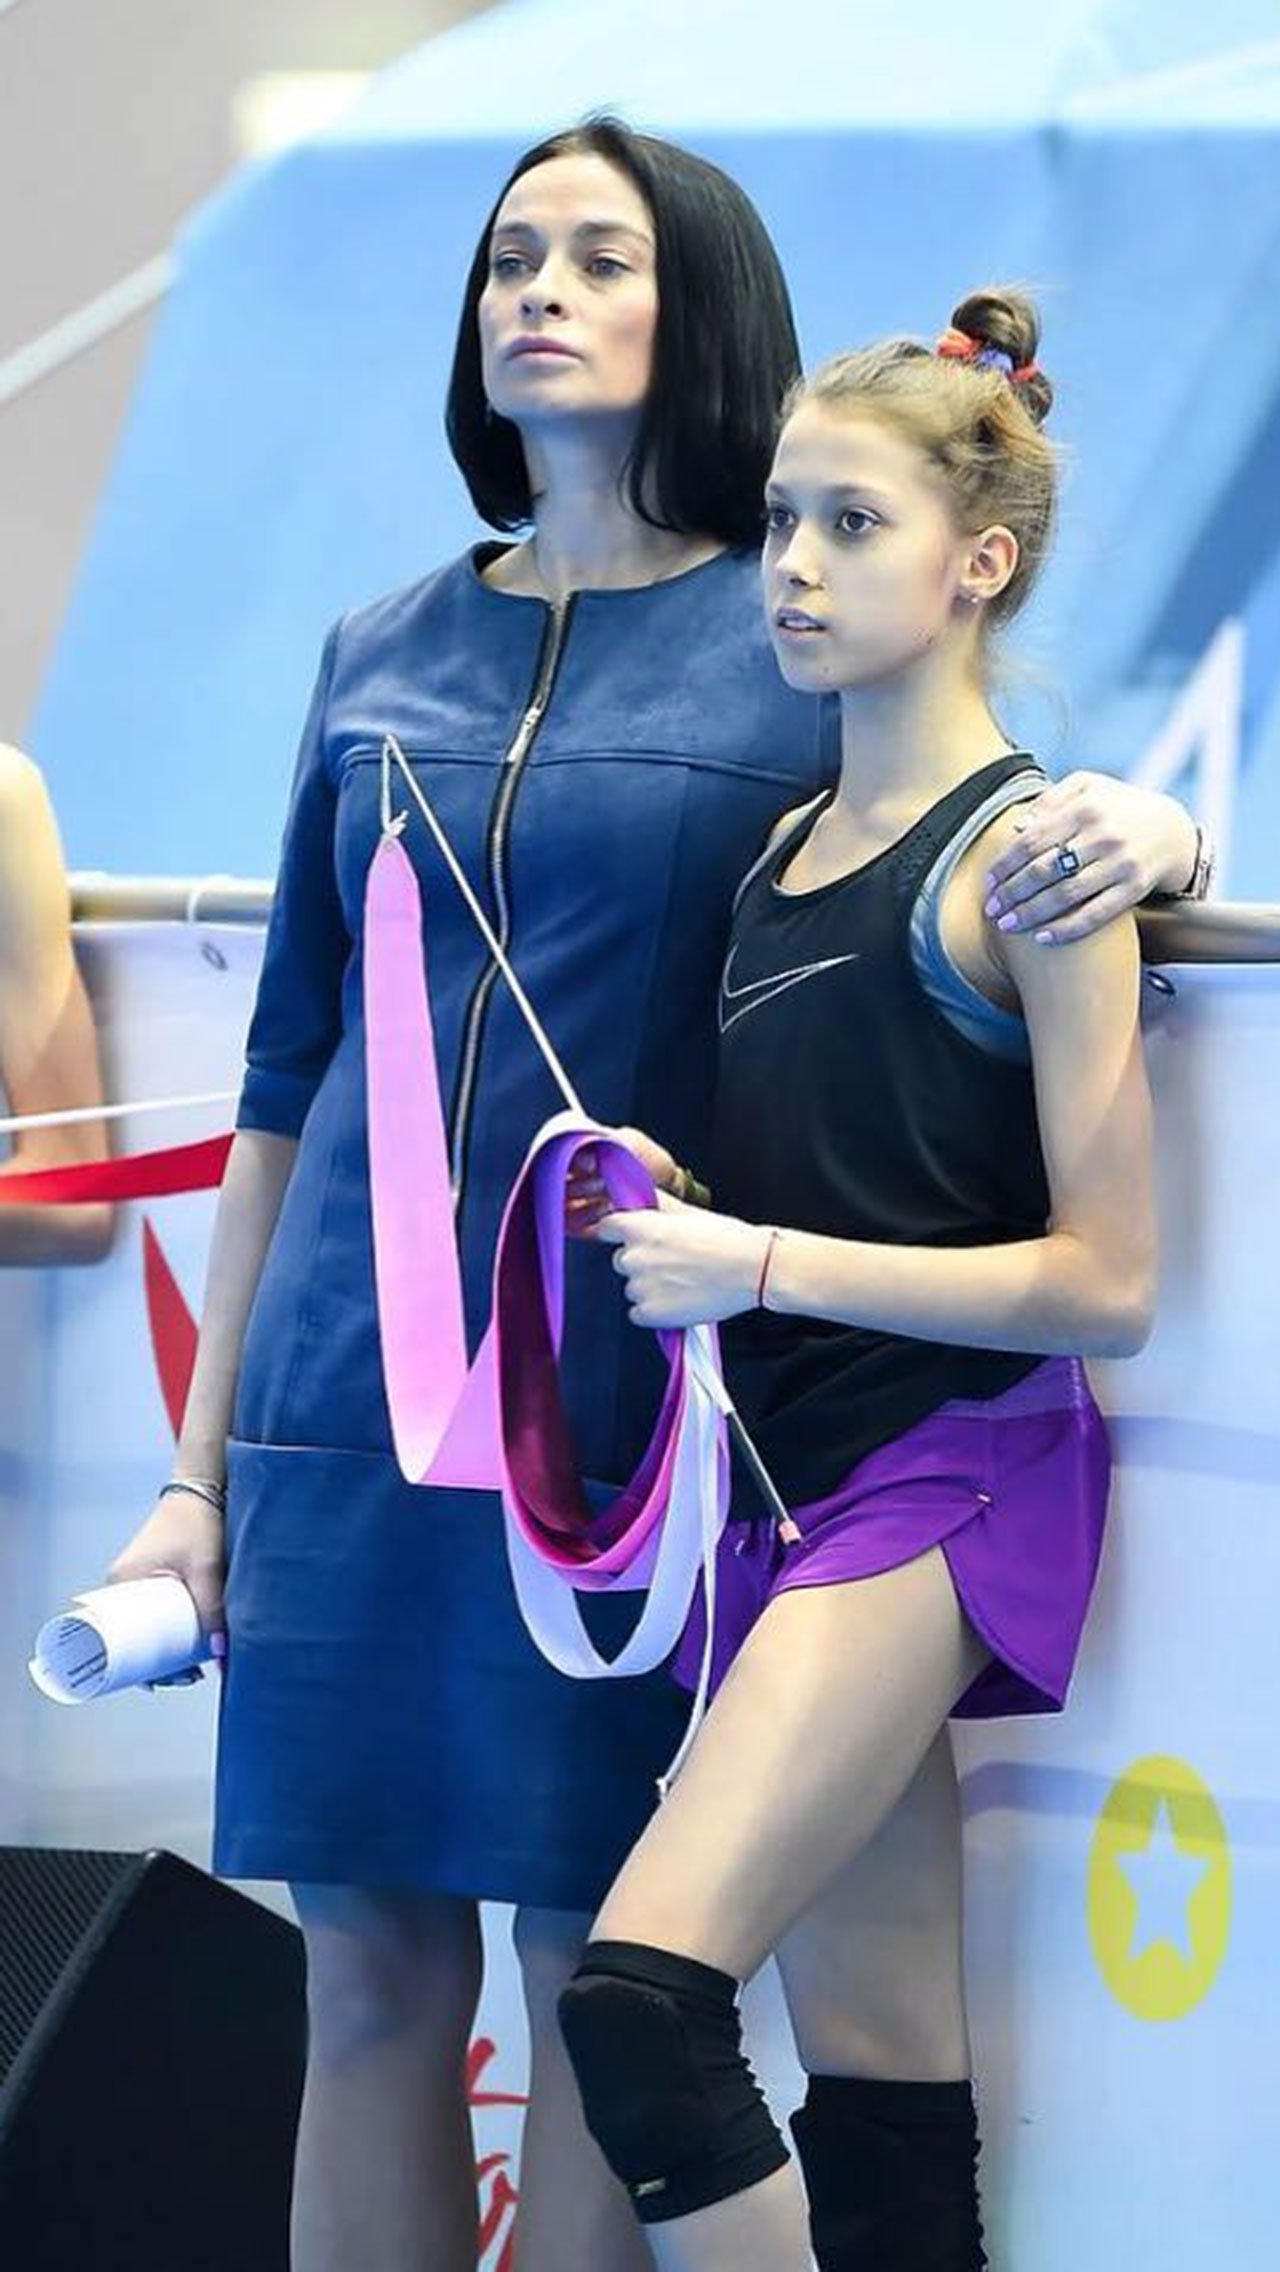 В 2012 году Барсукова открыла свою школу художественной гимнастики. Сейчас Юлия в разводе и о своей личной жизни не распространяется.